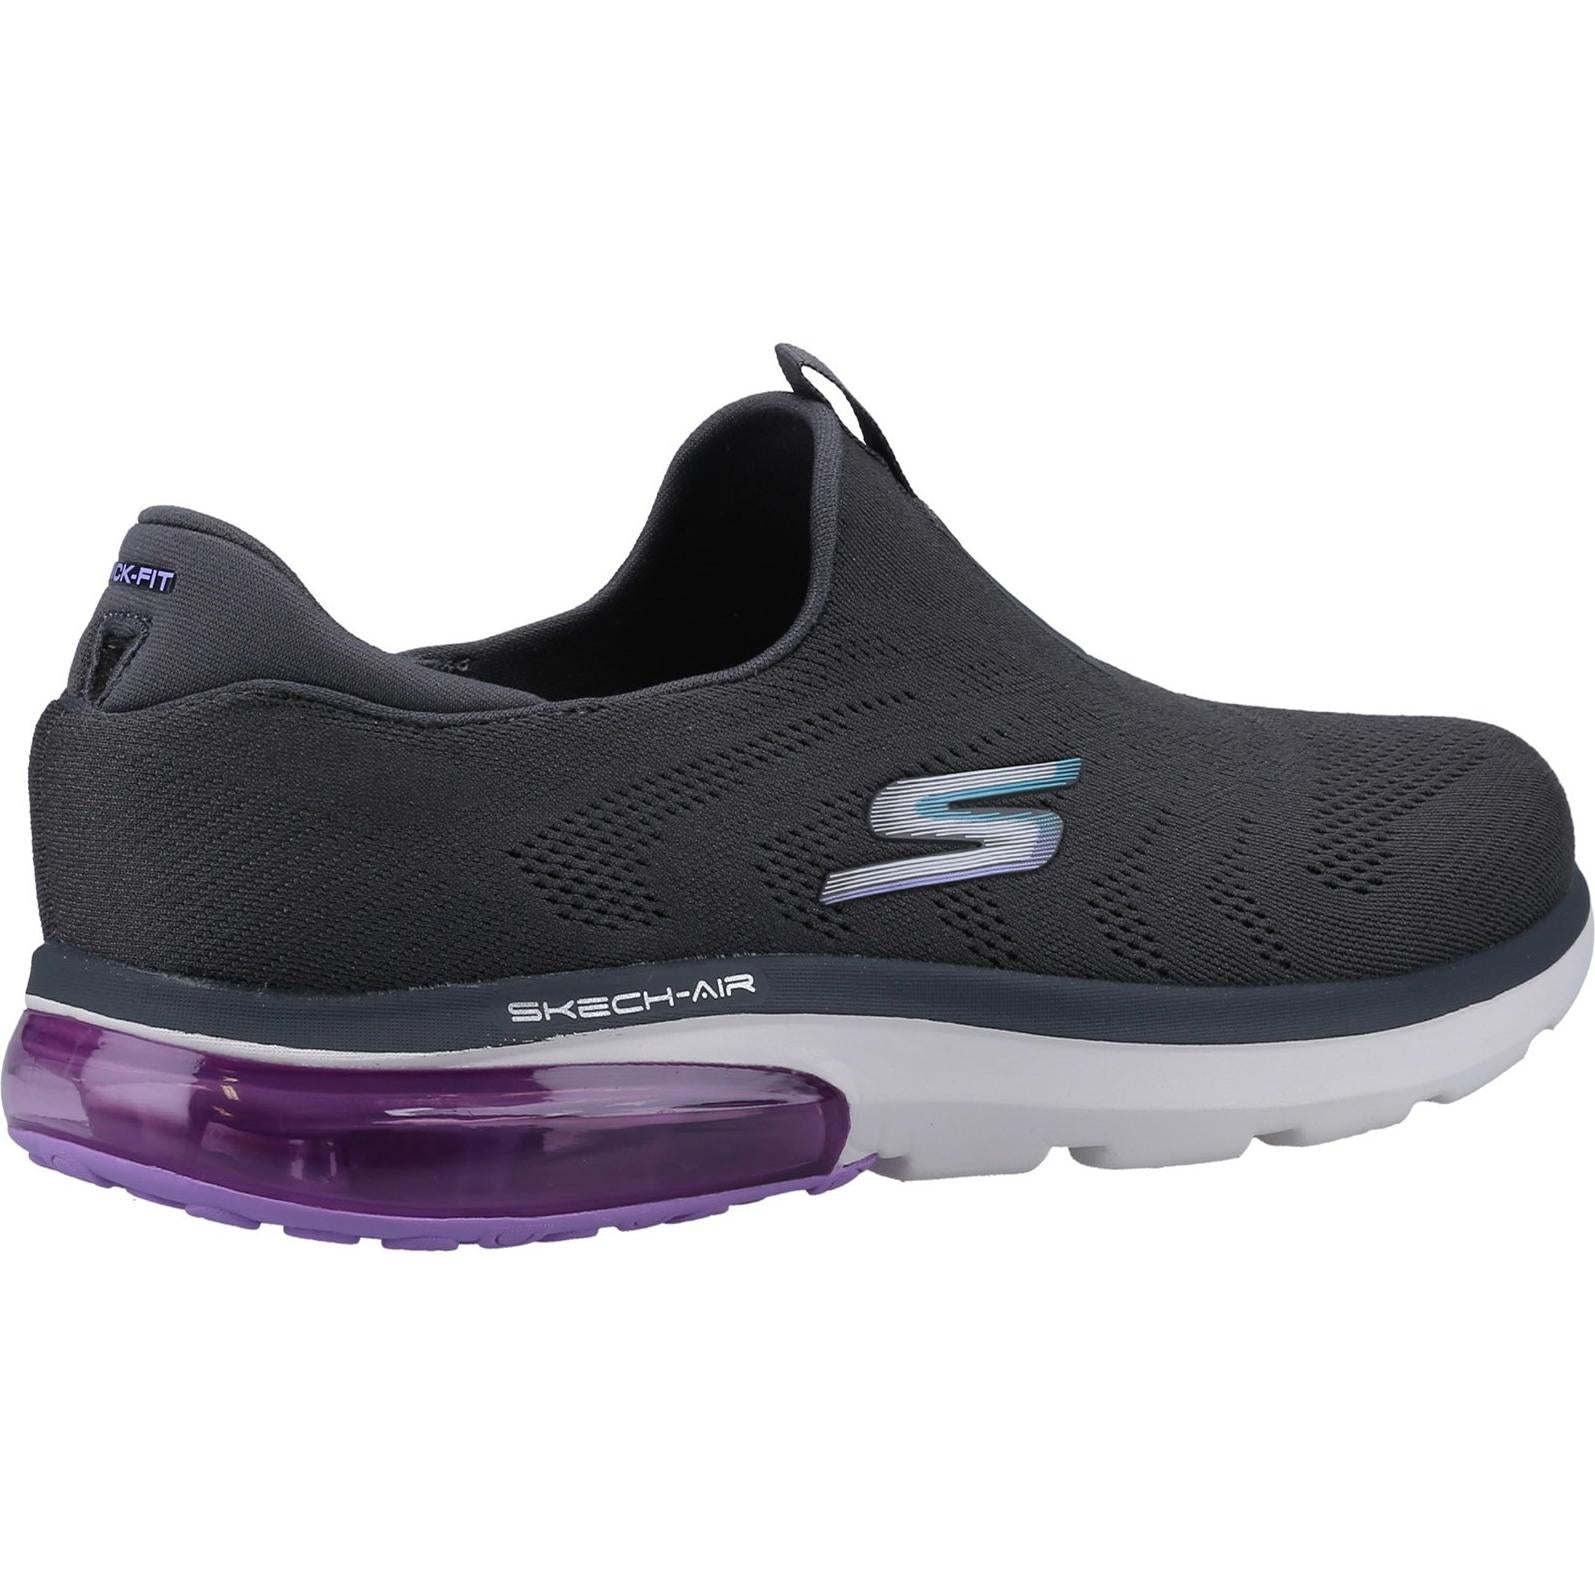 Skechers Go Walk Air 2.0 Shoe